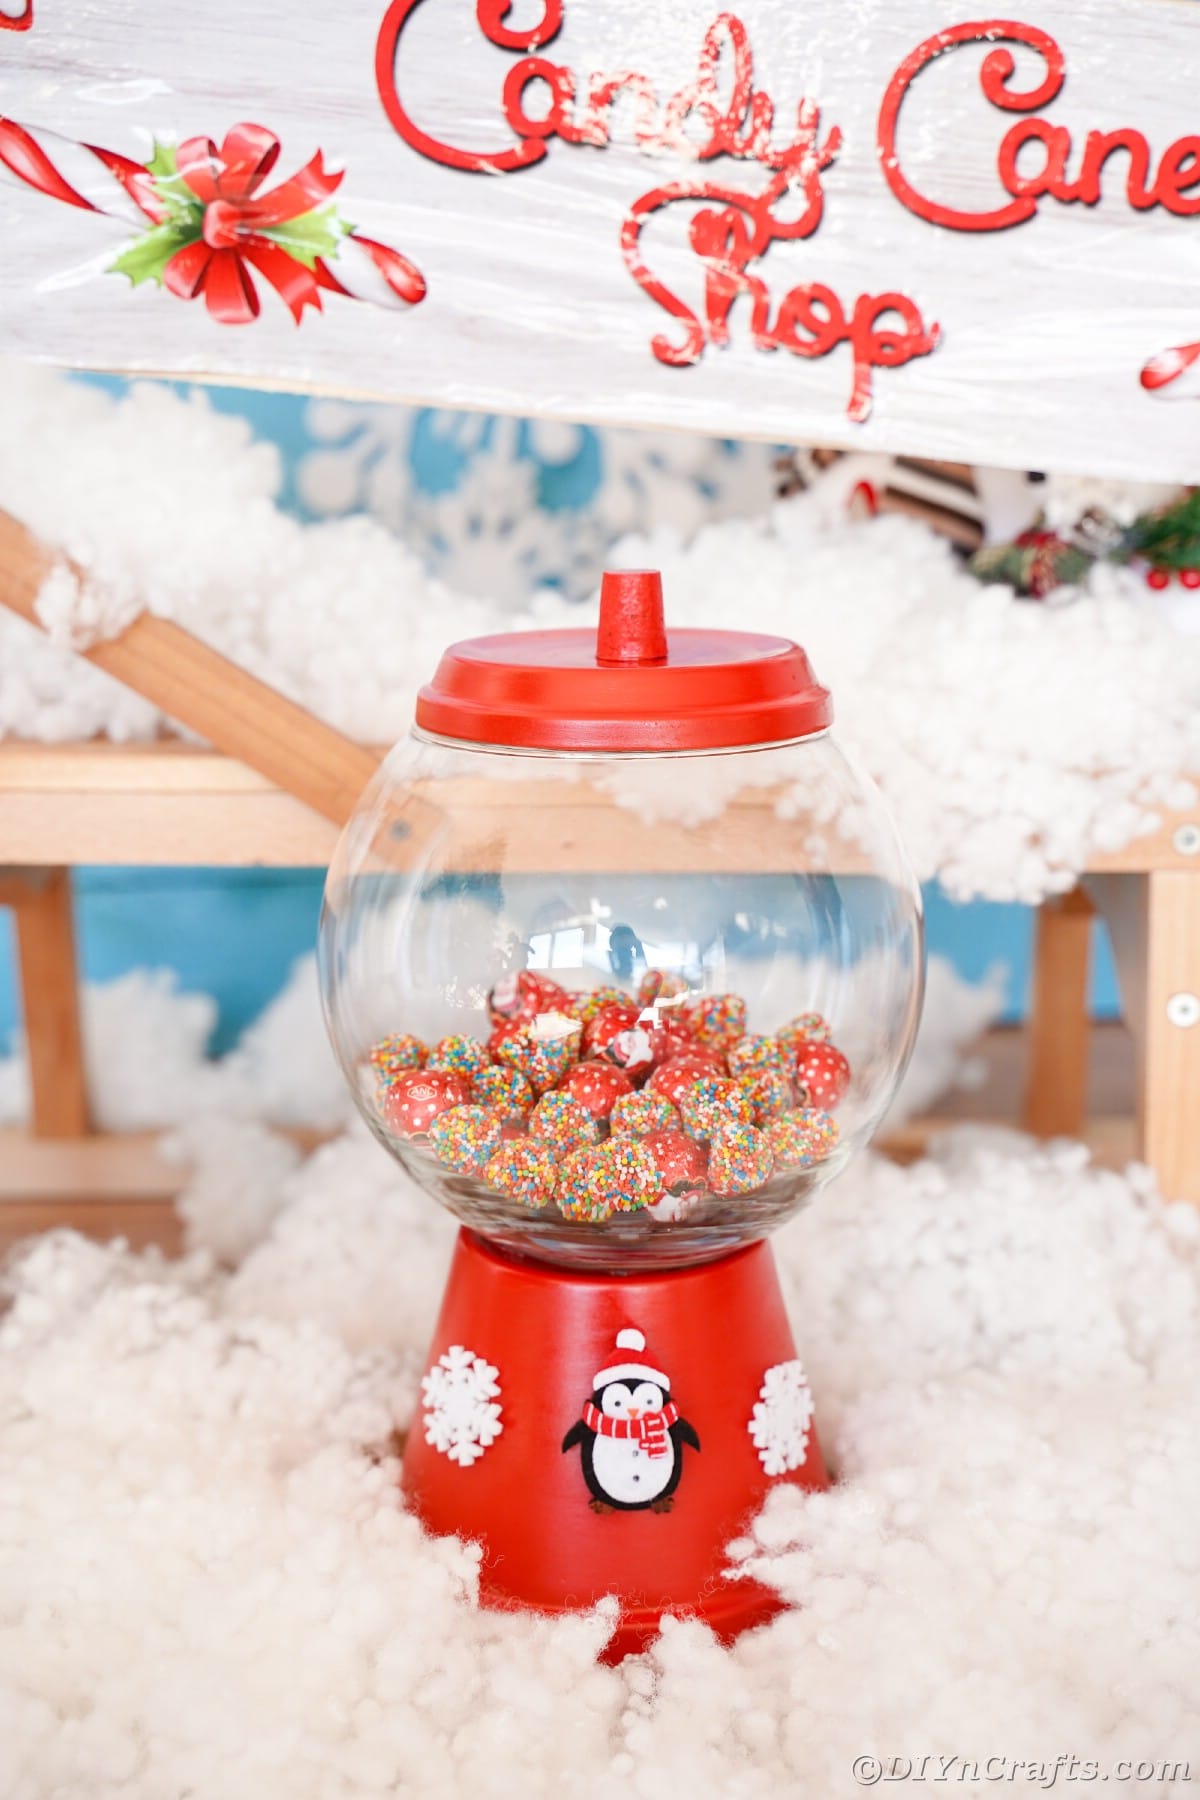 pot de bonbons rouge sur fausse neige avec candy cane shop sign in background